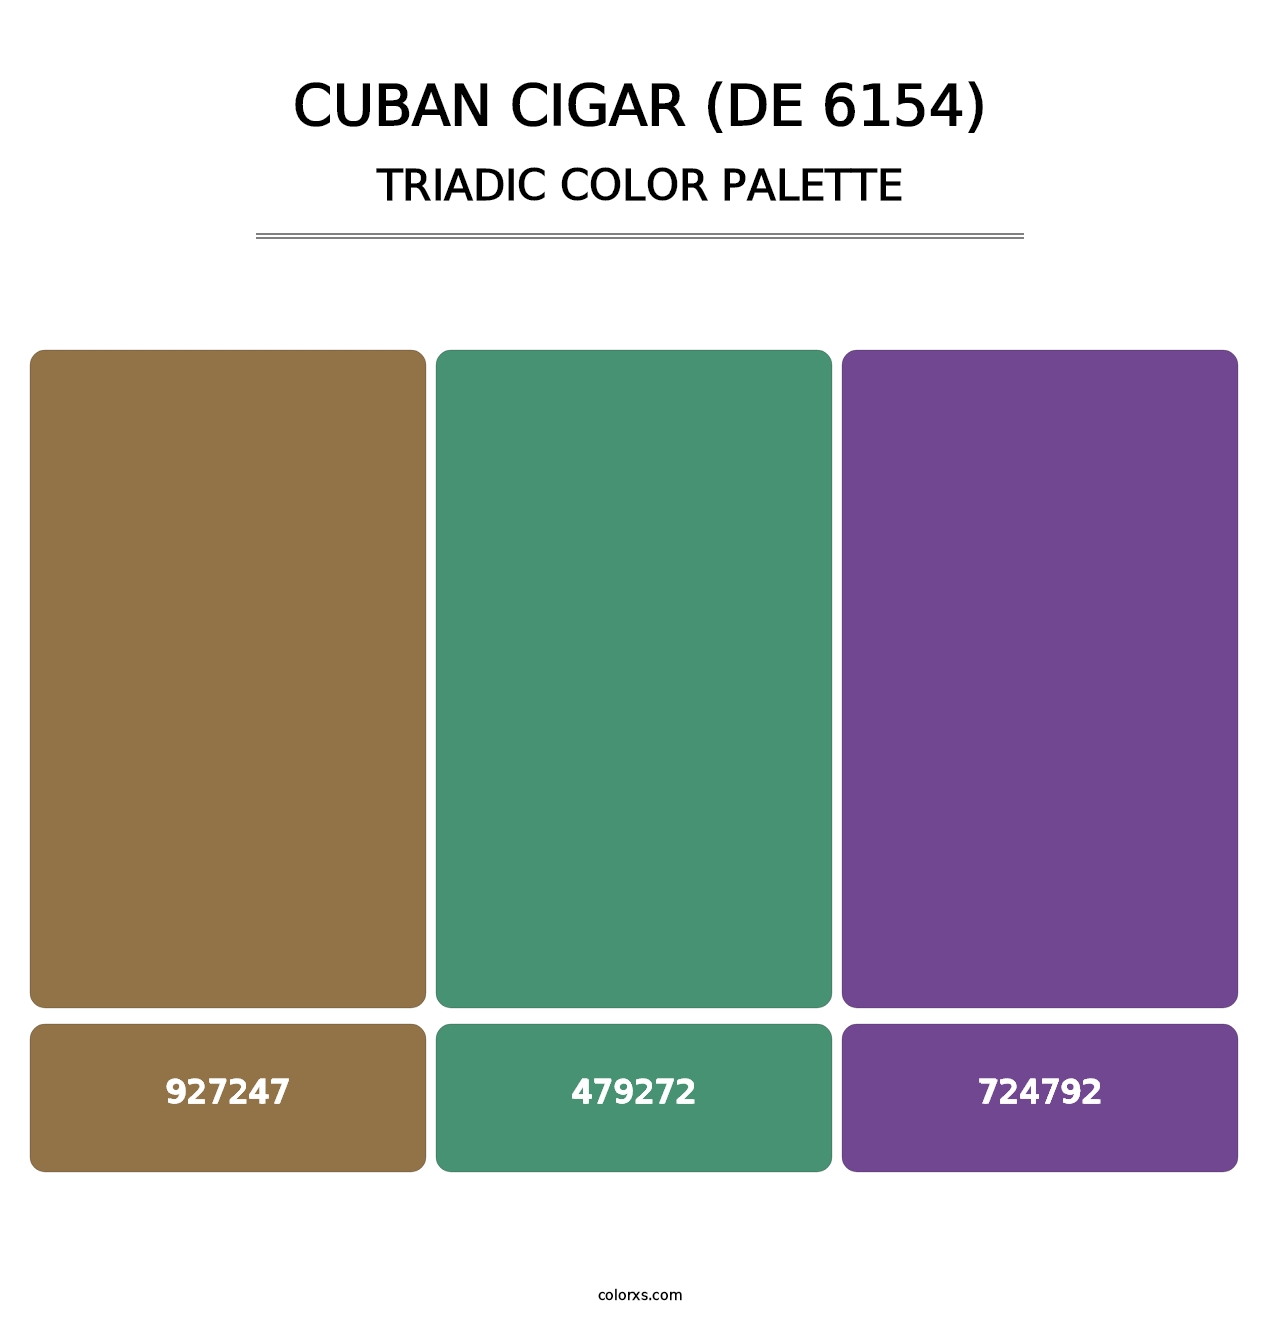 Cuban Cigar (DE 6154) - Triadic Color Palette